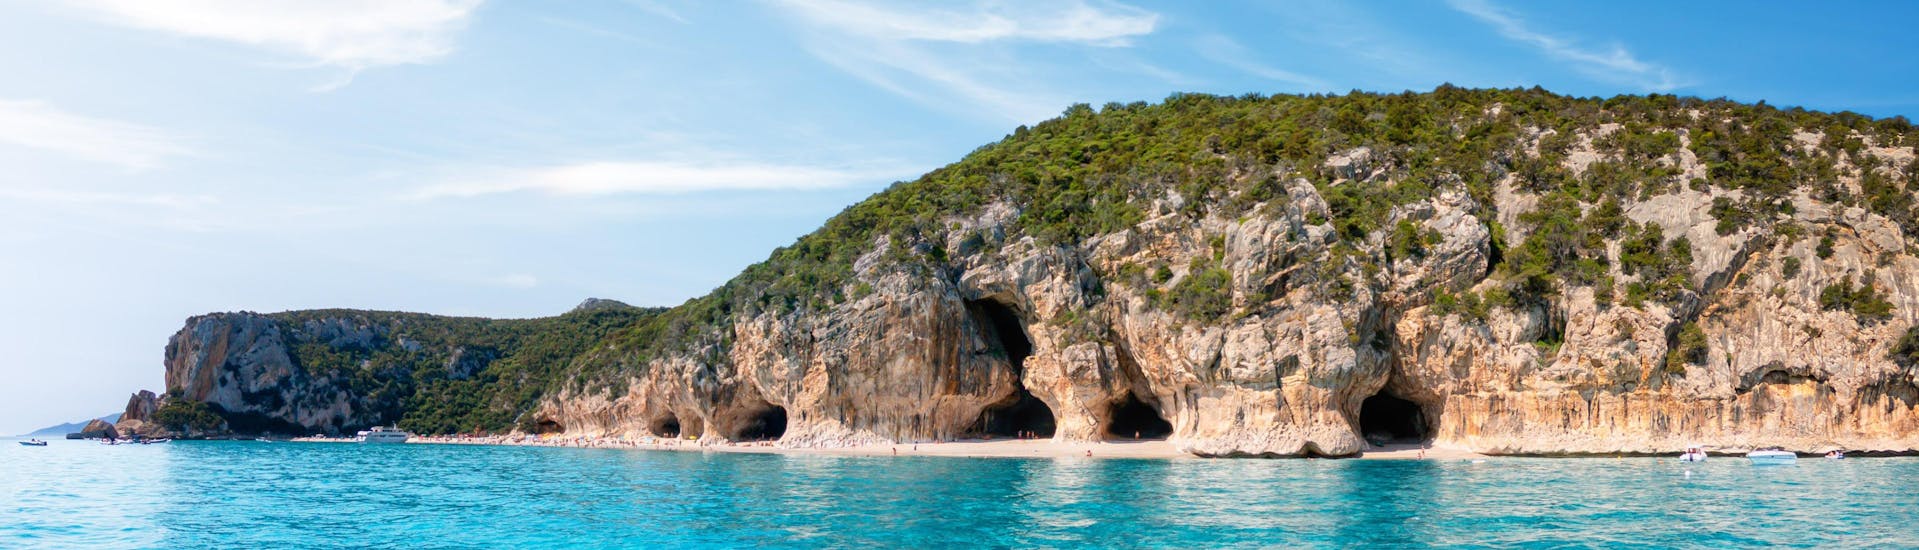 Foto van de grotten langs de kust van Cala Luna, Sardinië, een populaire bestemming voor boottochten.